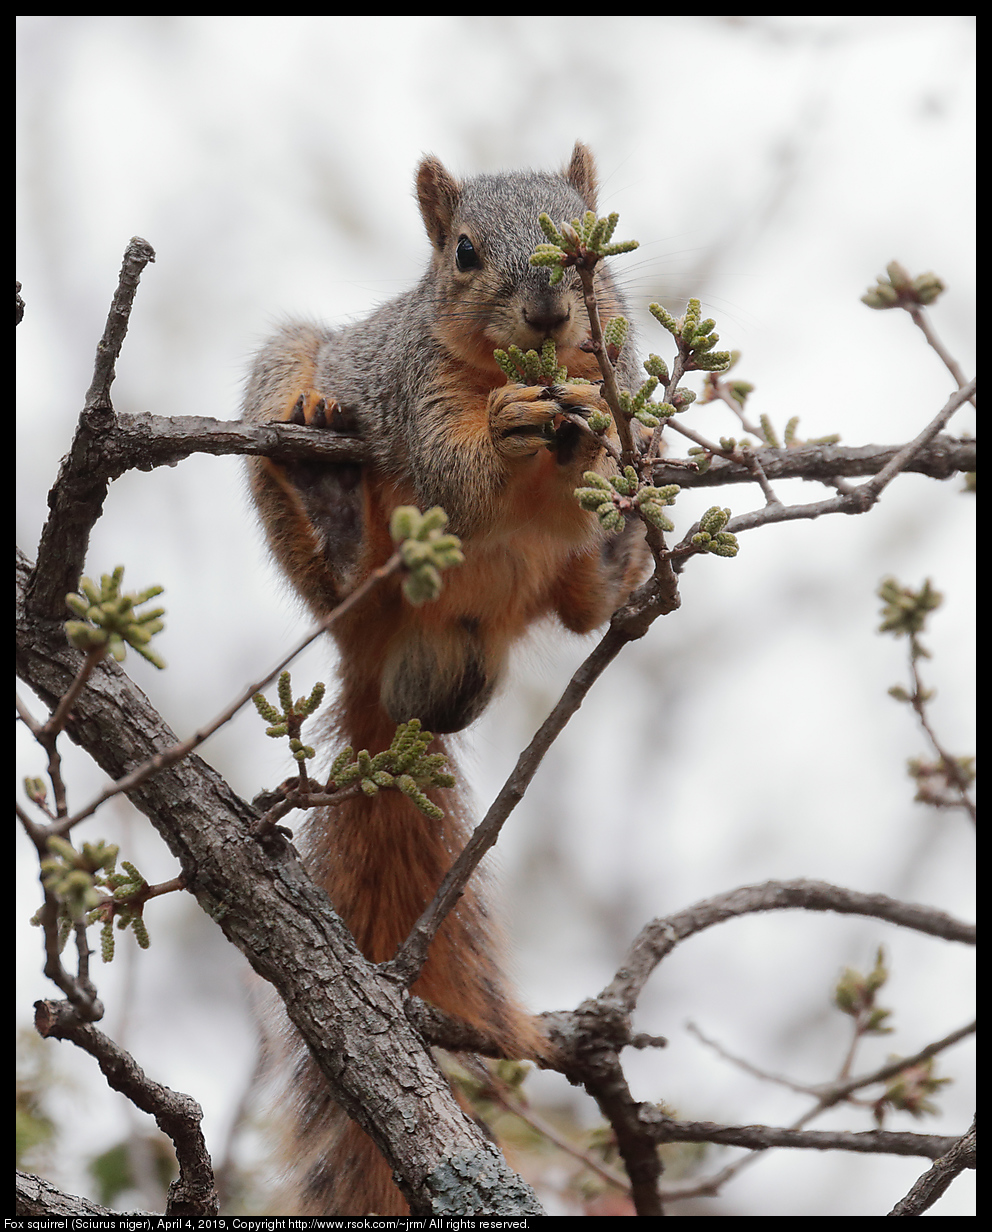 Fox squirrel (Sciurus niger), April 4, 2019